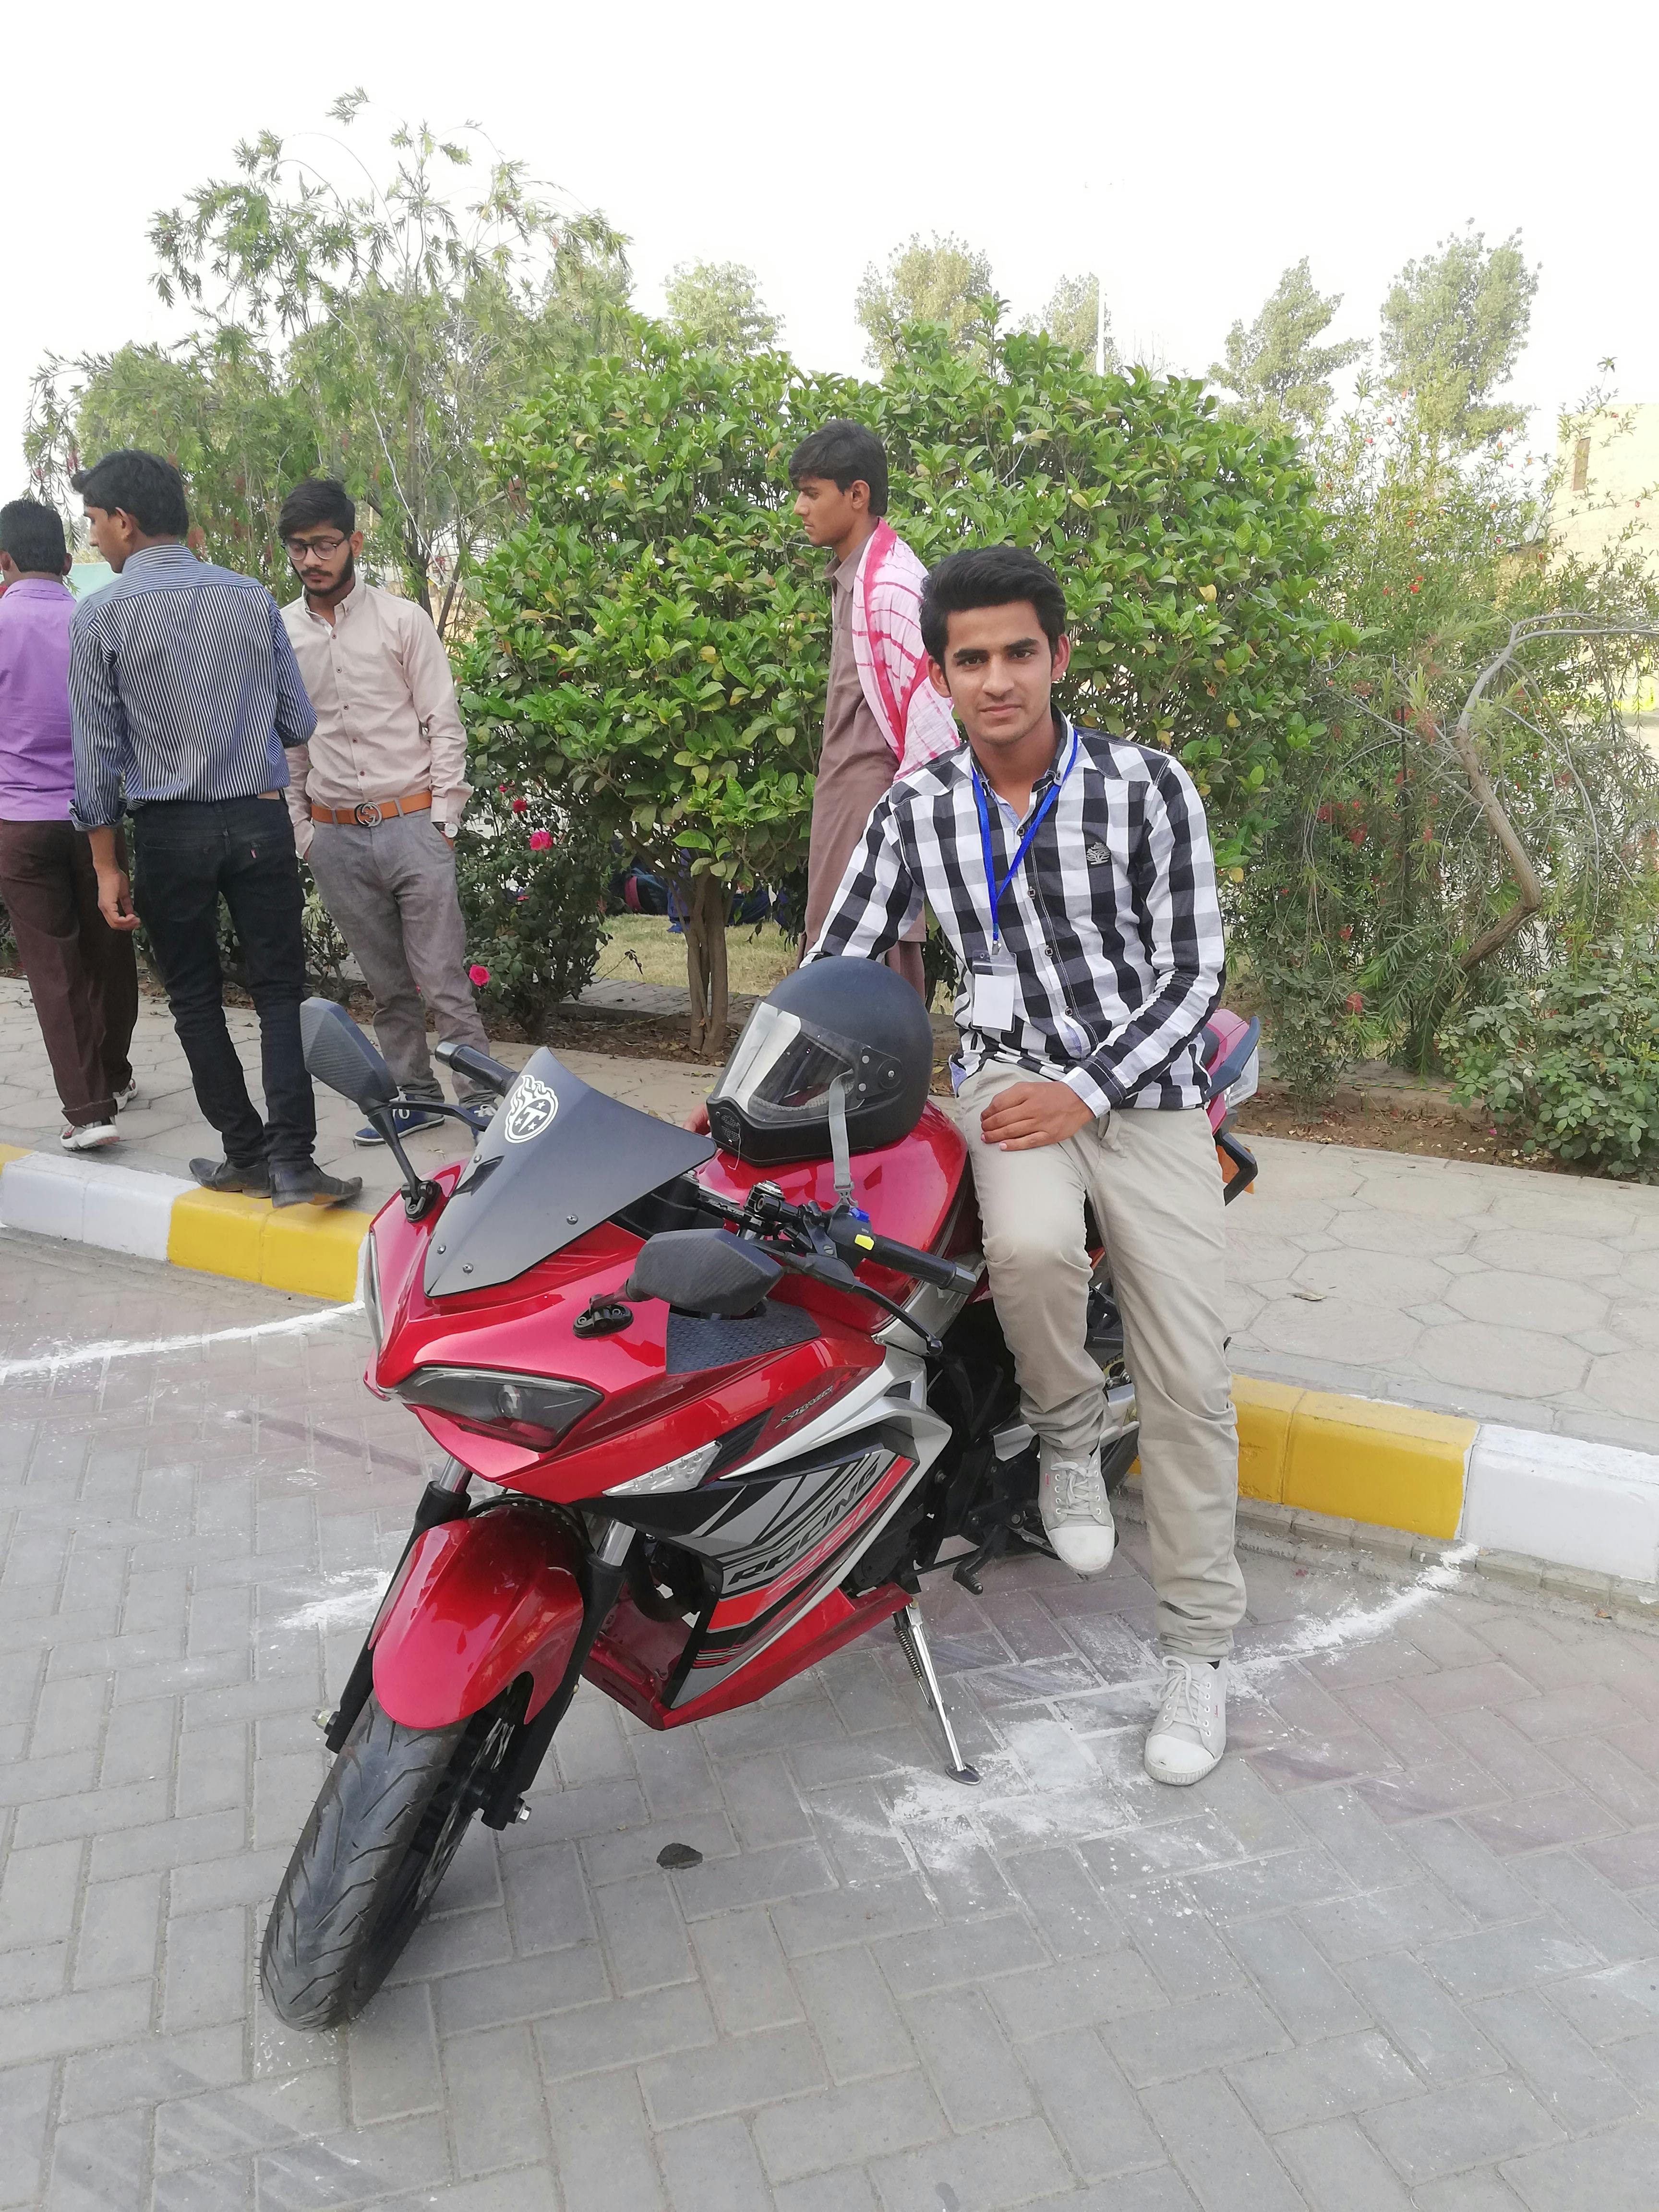 Free stock photo of Afzaal, Afzaal Ahmad, Afzaal Ahmad driving heavy bikes